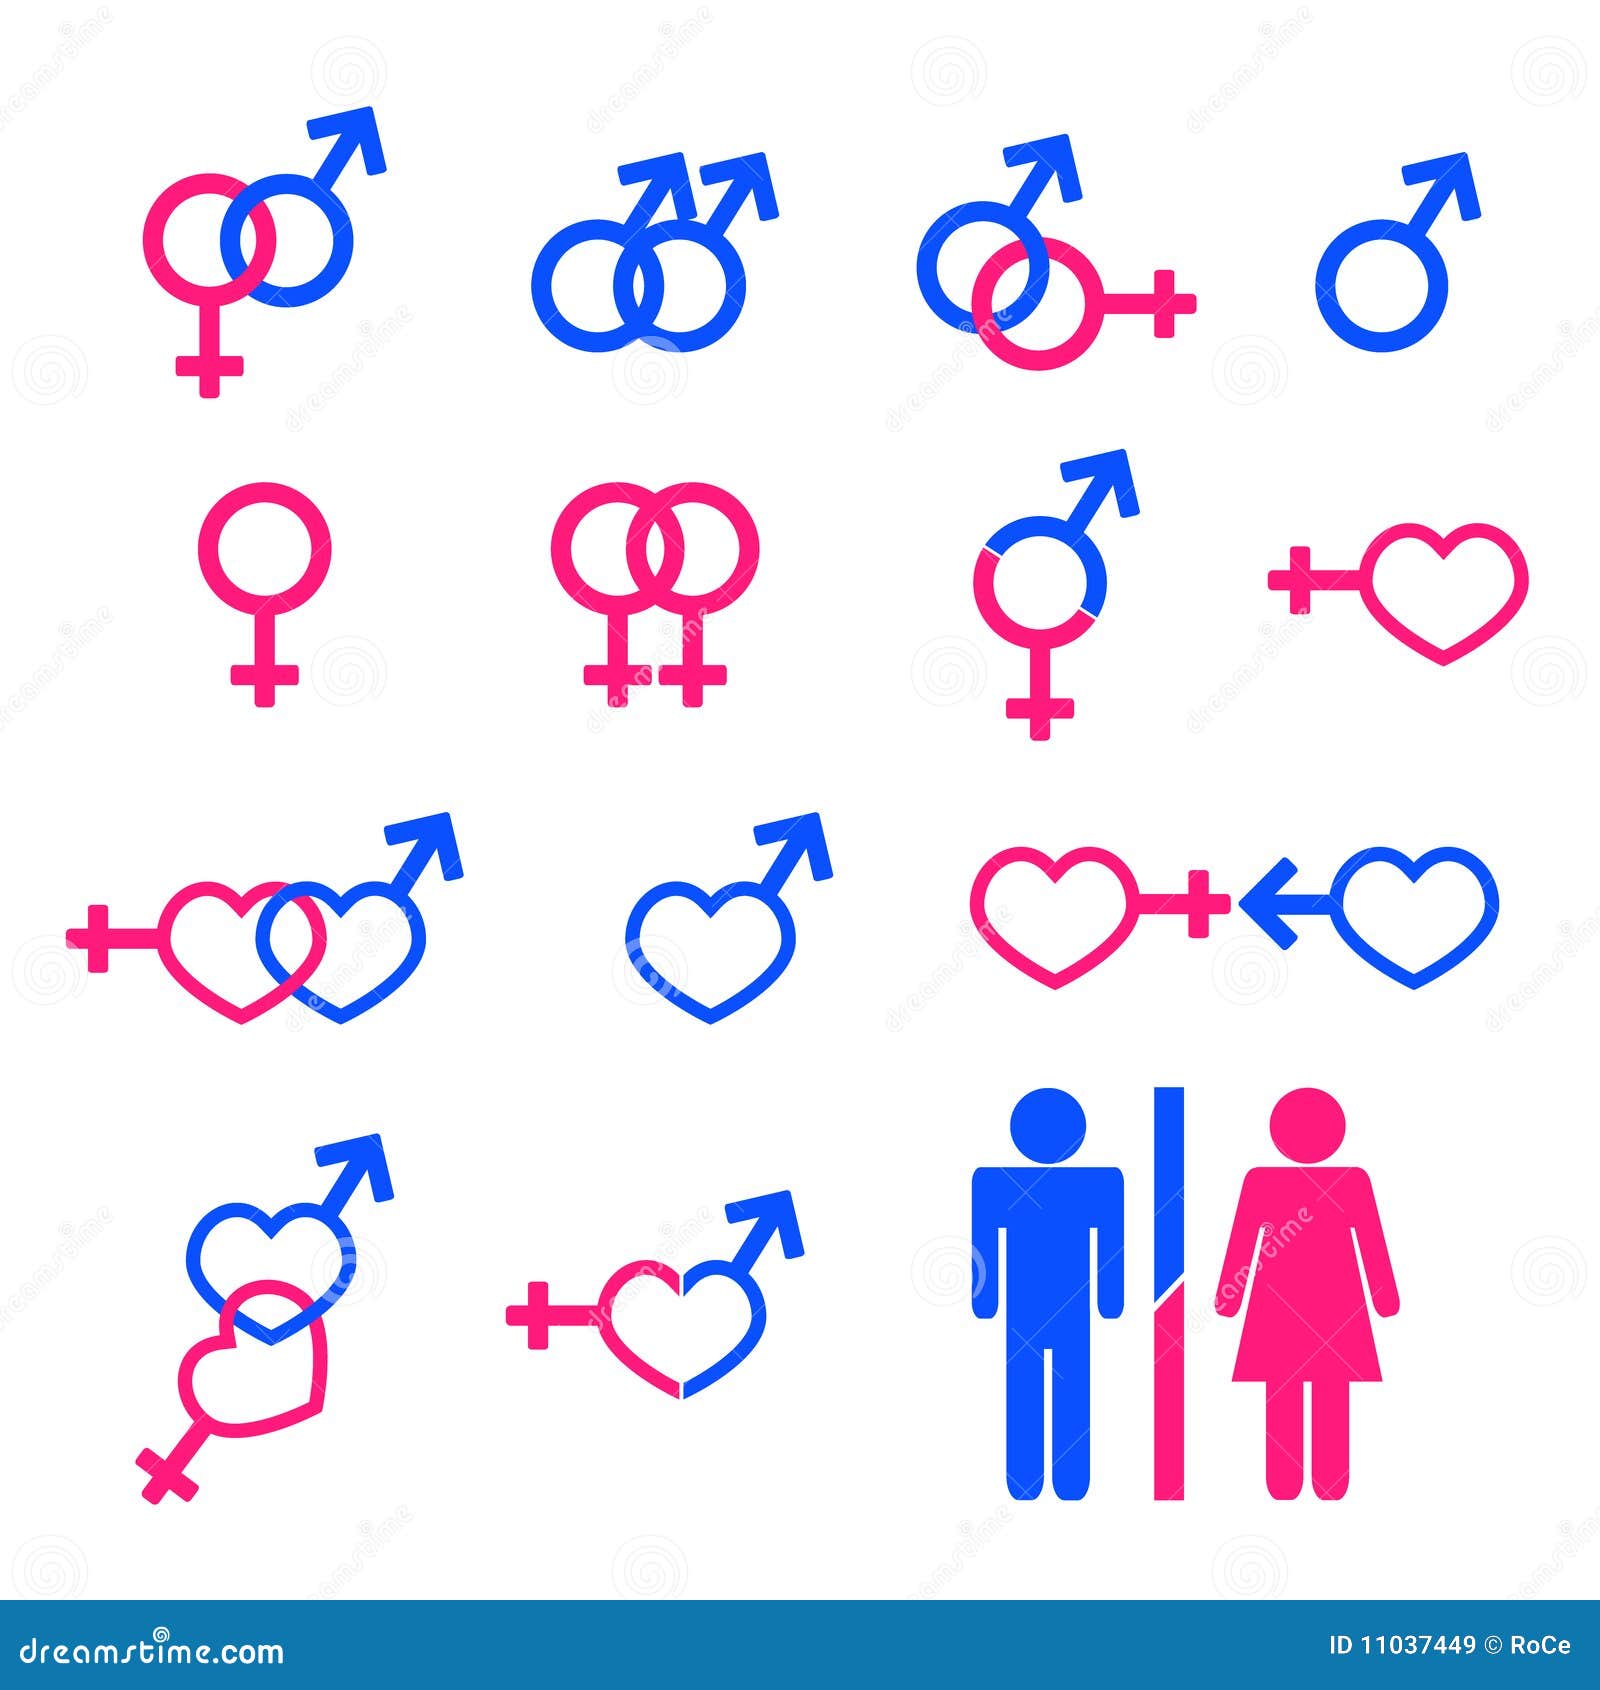 Знак жен пола. Символ мужчины и женщины. Обозначение мужчины и женщины. Мужской и женский знак. Обозначение мужчины и женщины символами.